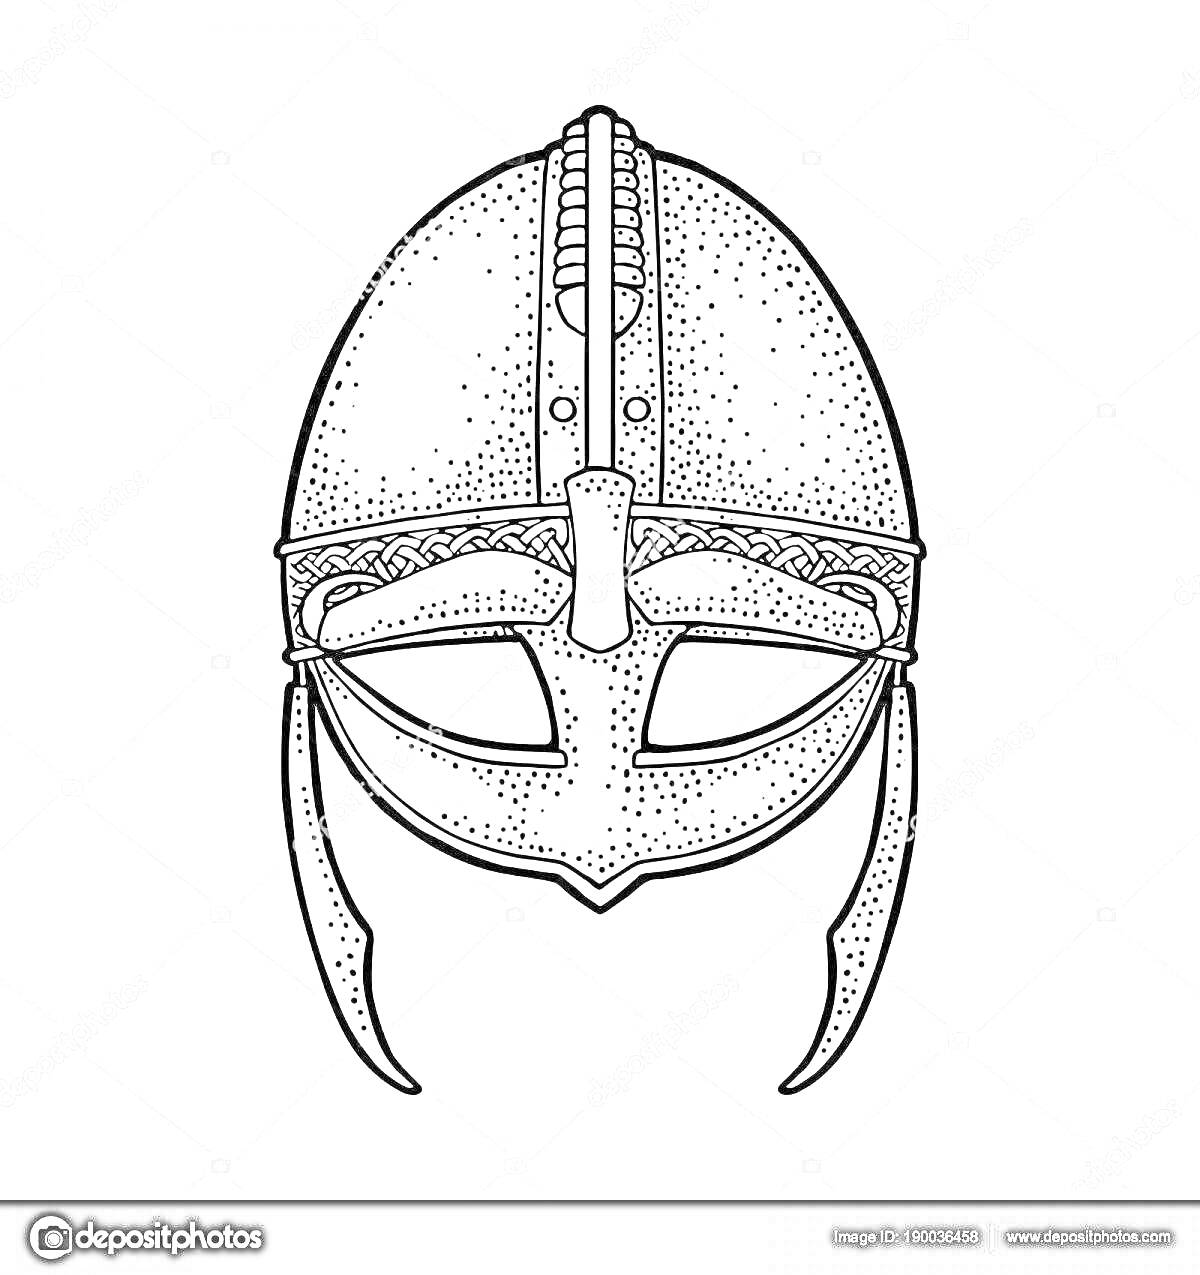 Раскраска Шлем богатыря с прорезями для глаз, рогами и декоративным узором